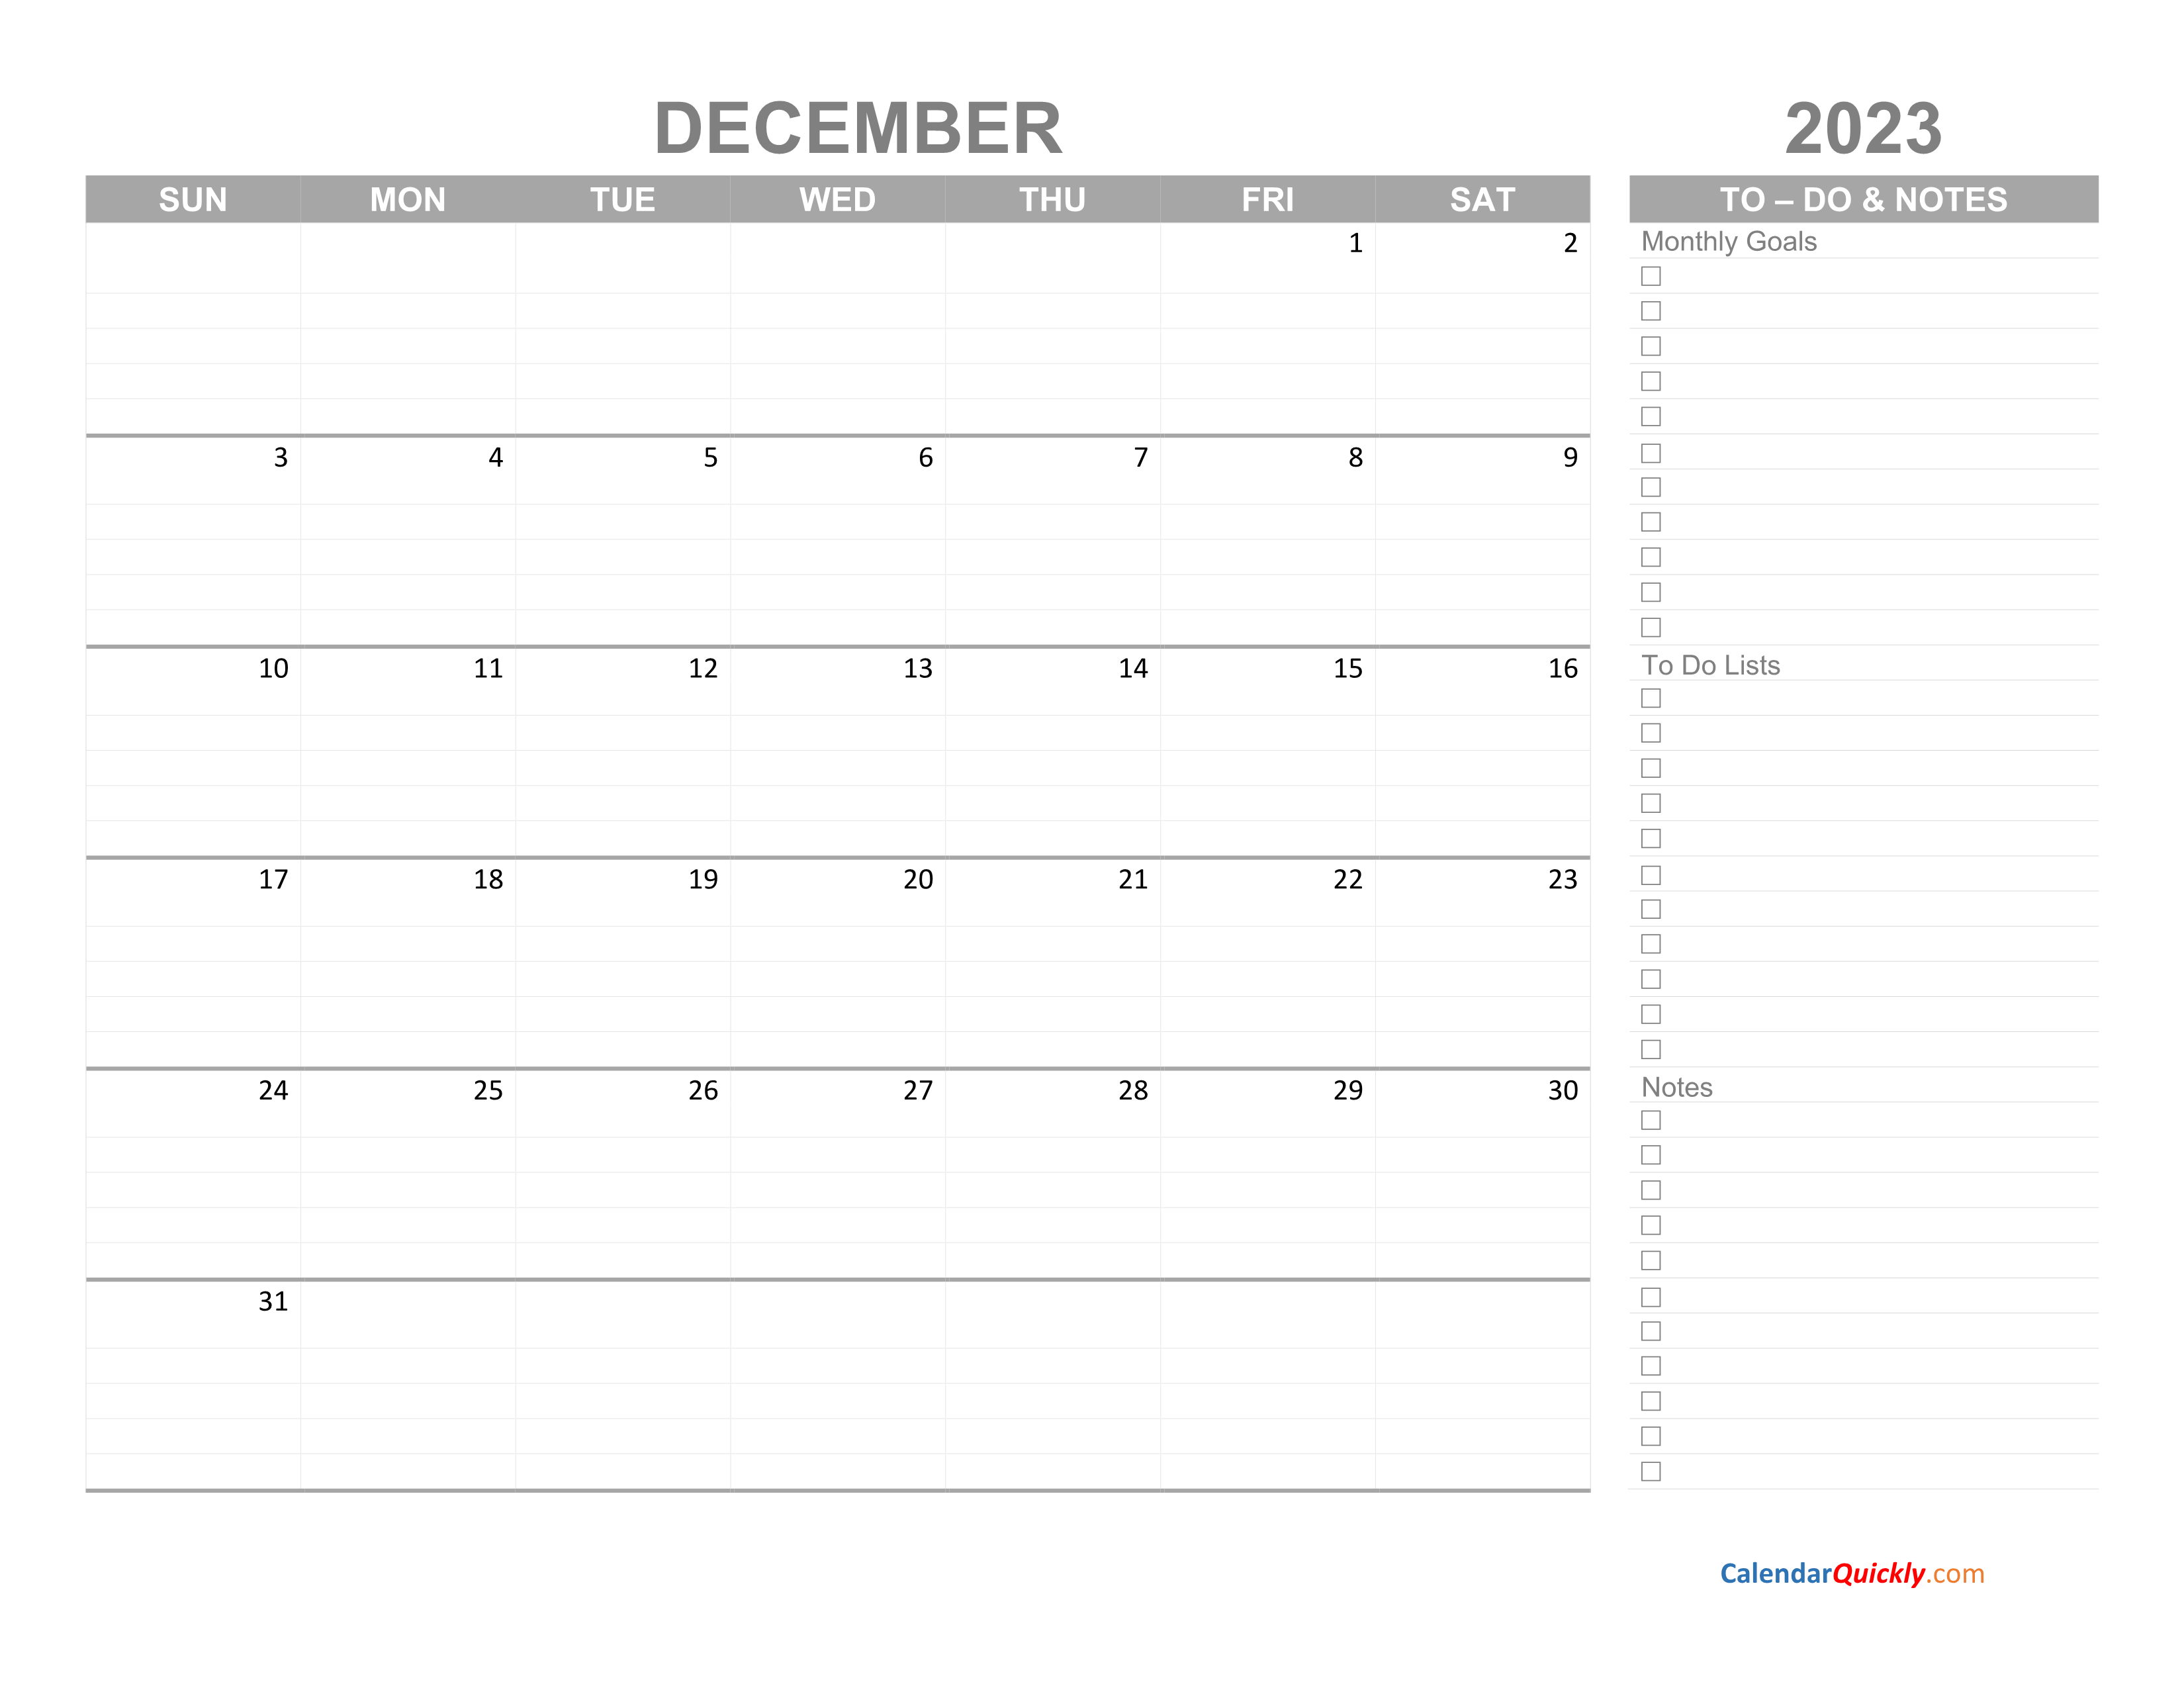 December 2023 Calendar With To Do List Calendar Quickly